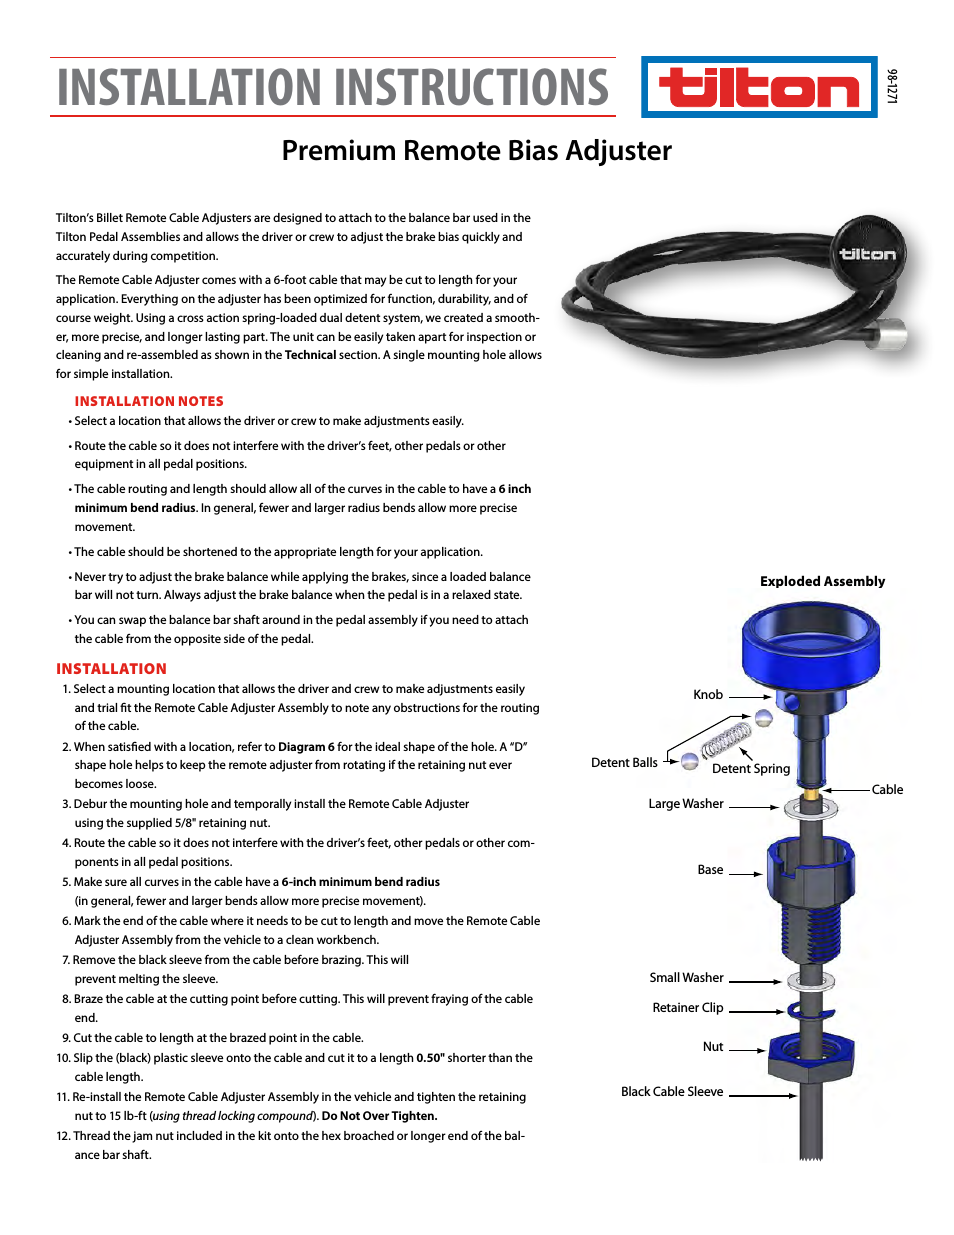 Premium Bias Adjuster (98-1271)